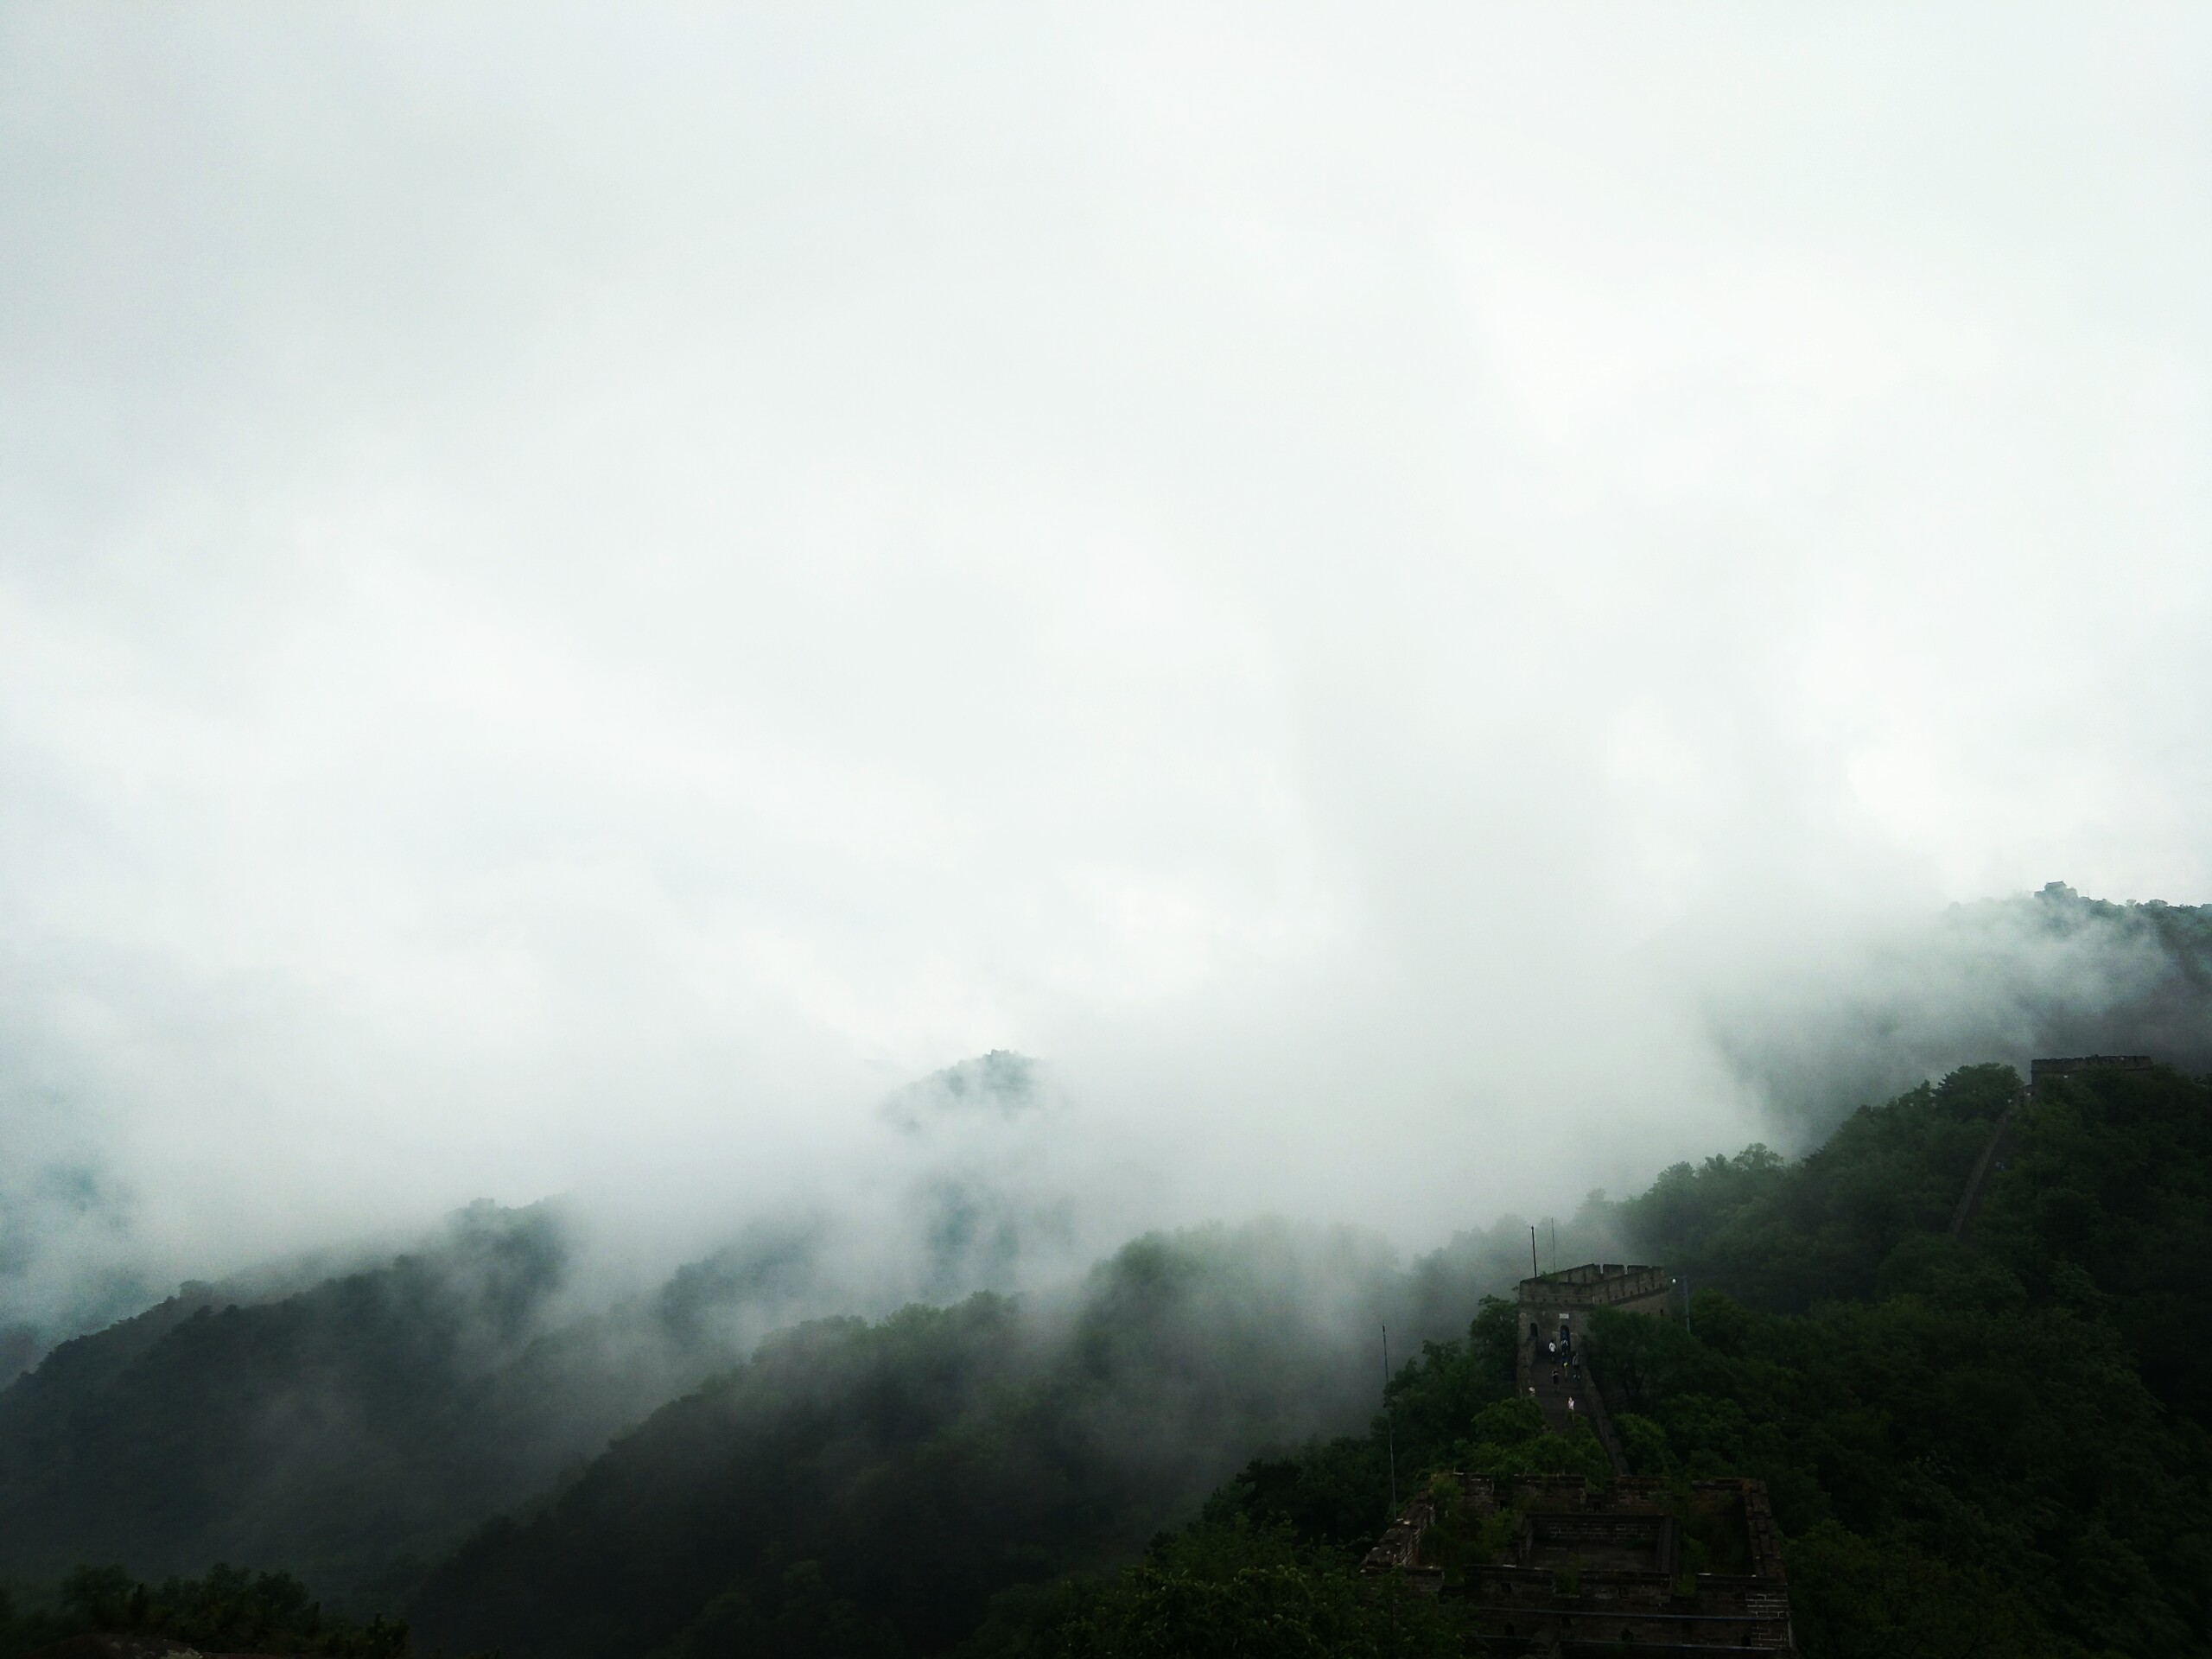 游玩看到慕田峪长城遇到下雨天烟飘的漫山遍野